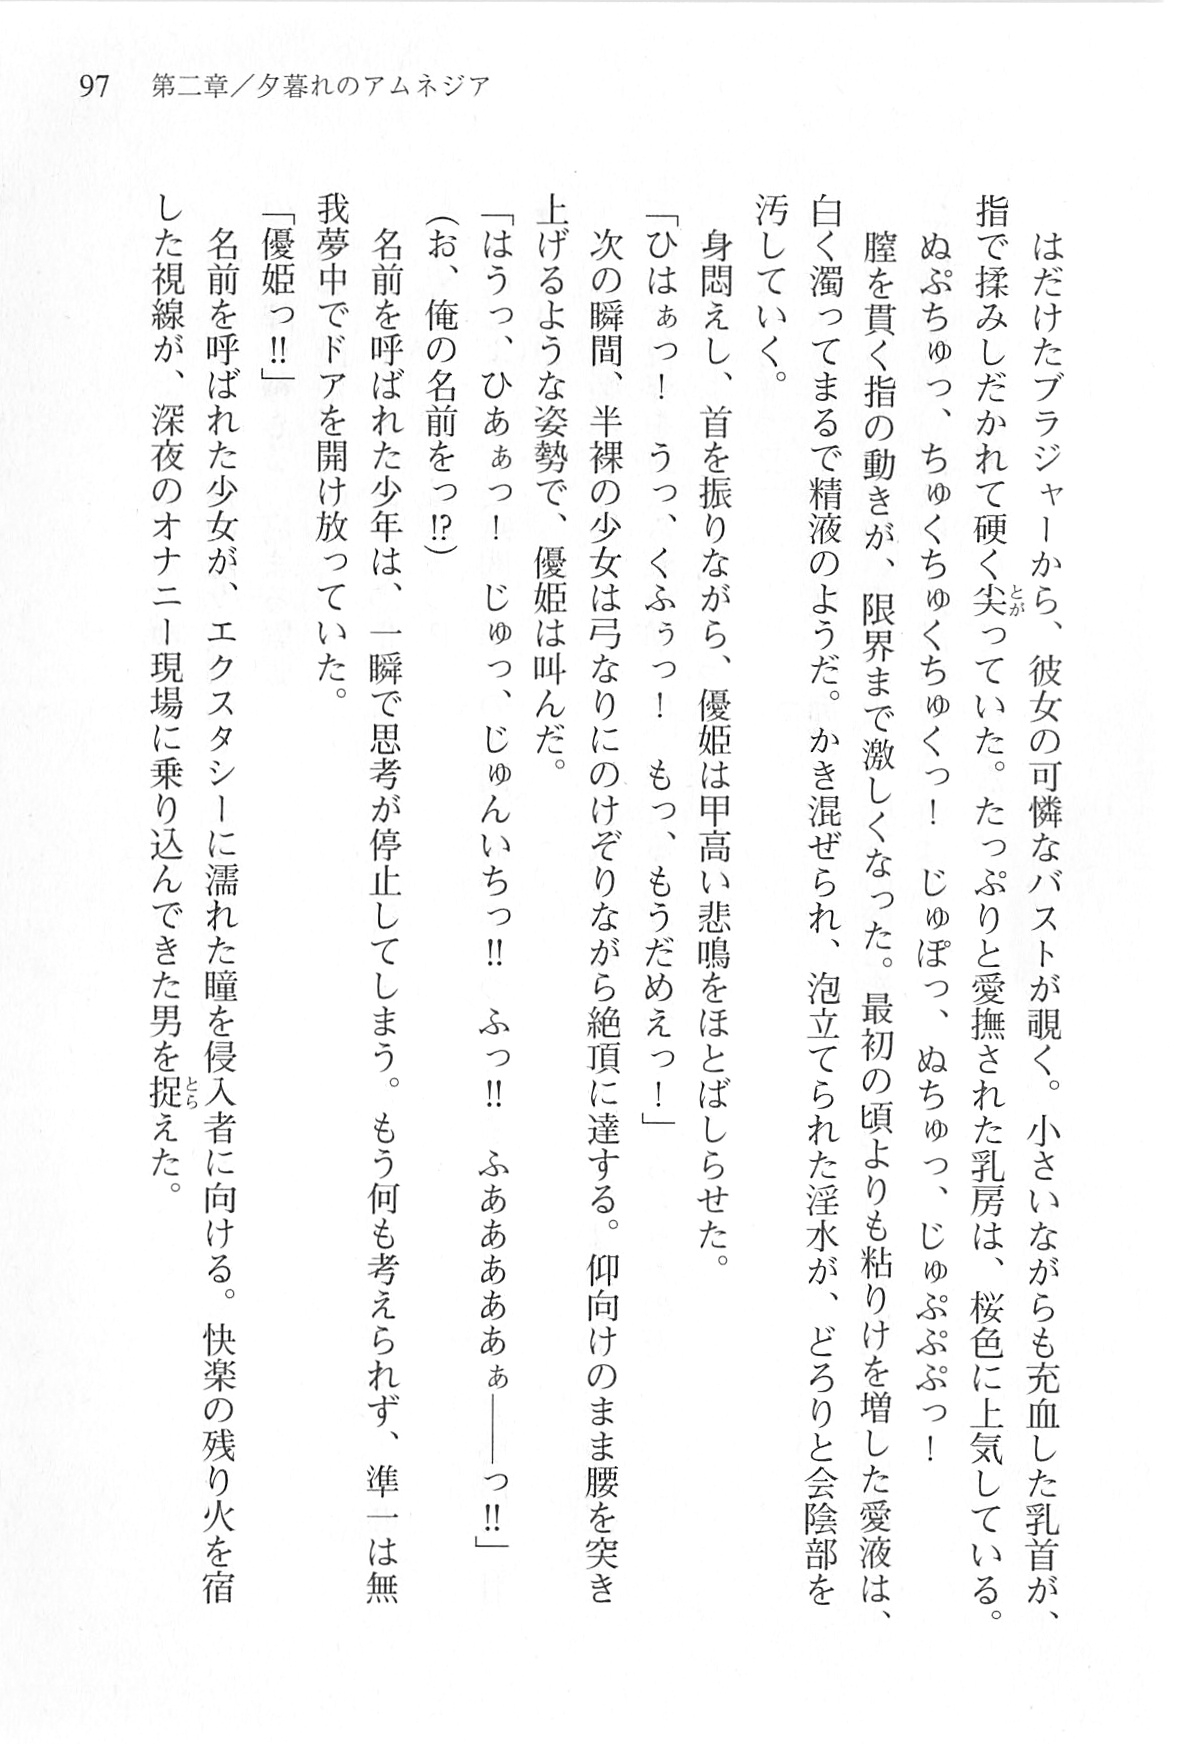 [Shinji Mao, Pierre Yoshio] Akaneiro ni Somaru Saka - Katagiri Yuuhi no Koiiro 97